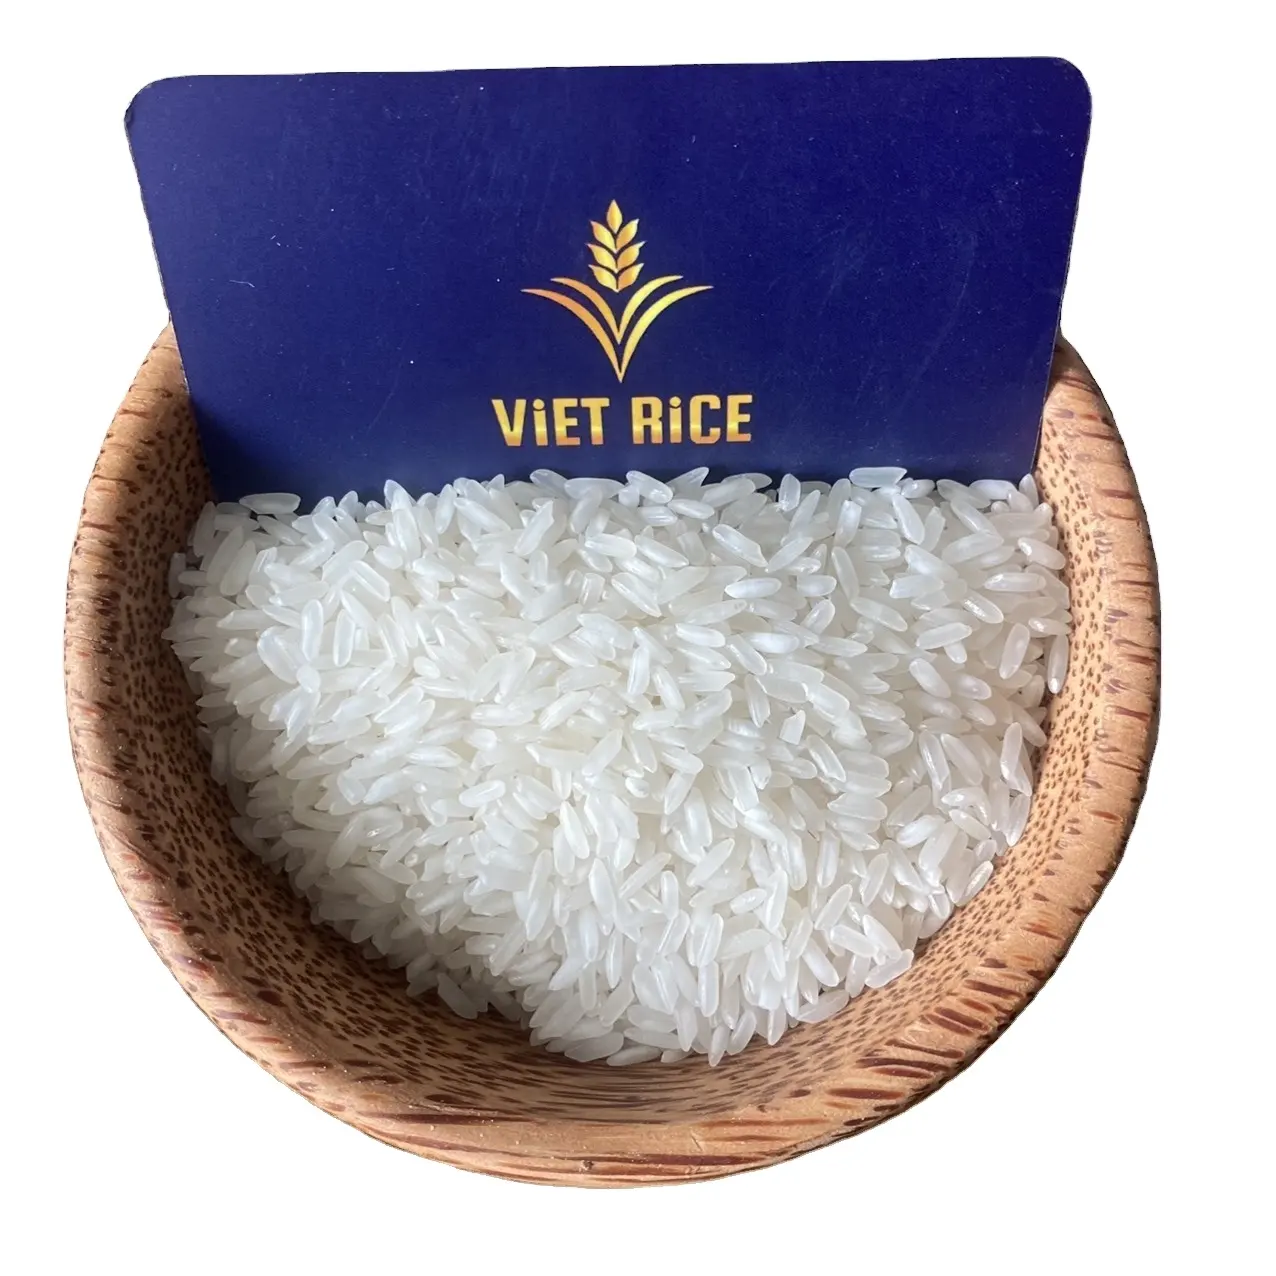 أرز أبيض طويل الحبوب ممتاز (IR504 5% مكسور) بسعر تنافسي من المُنتج والمُصدِر الفيتنامي المشهور VIETRICE